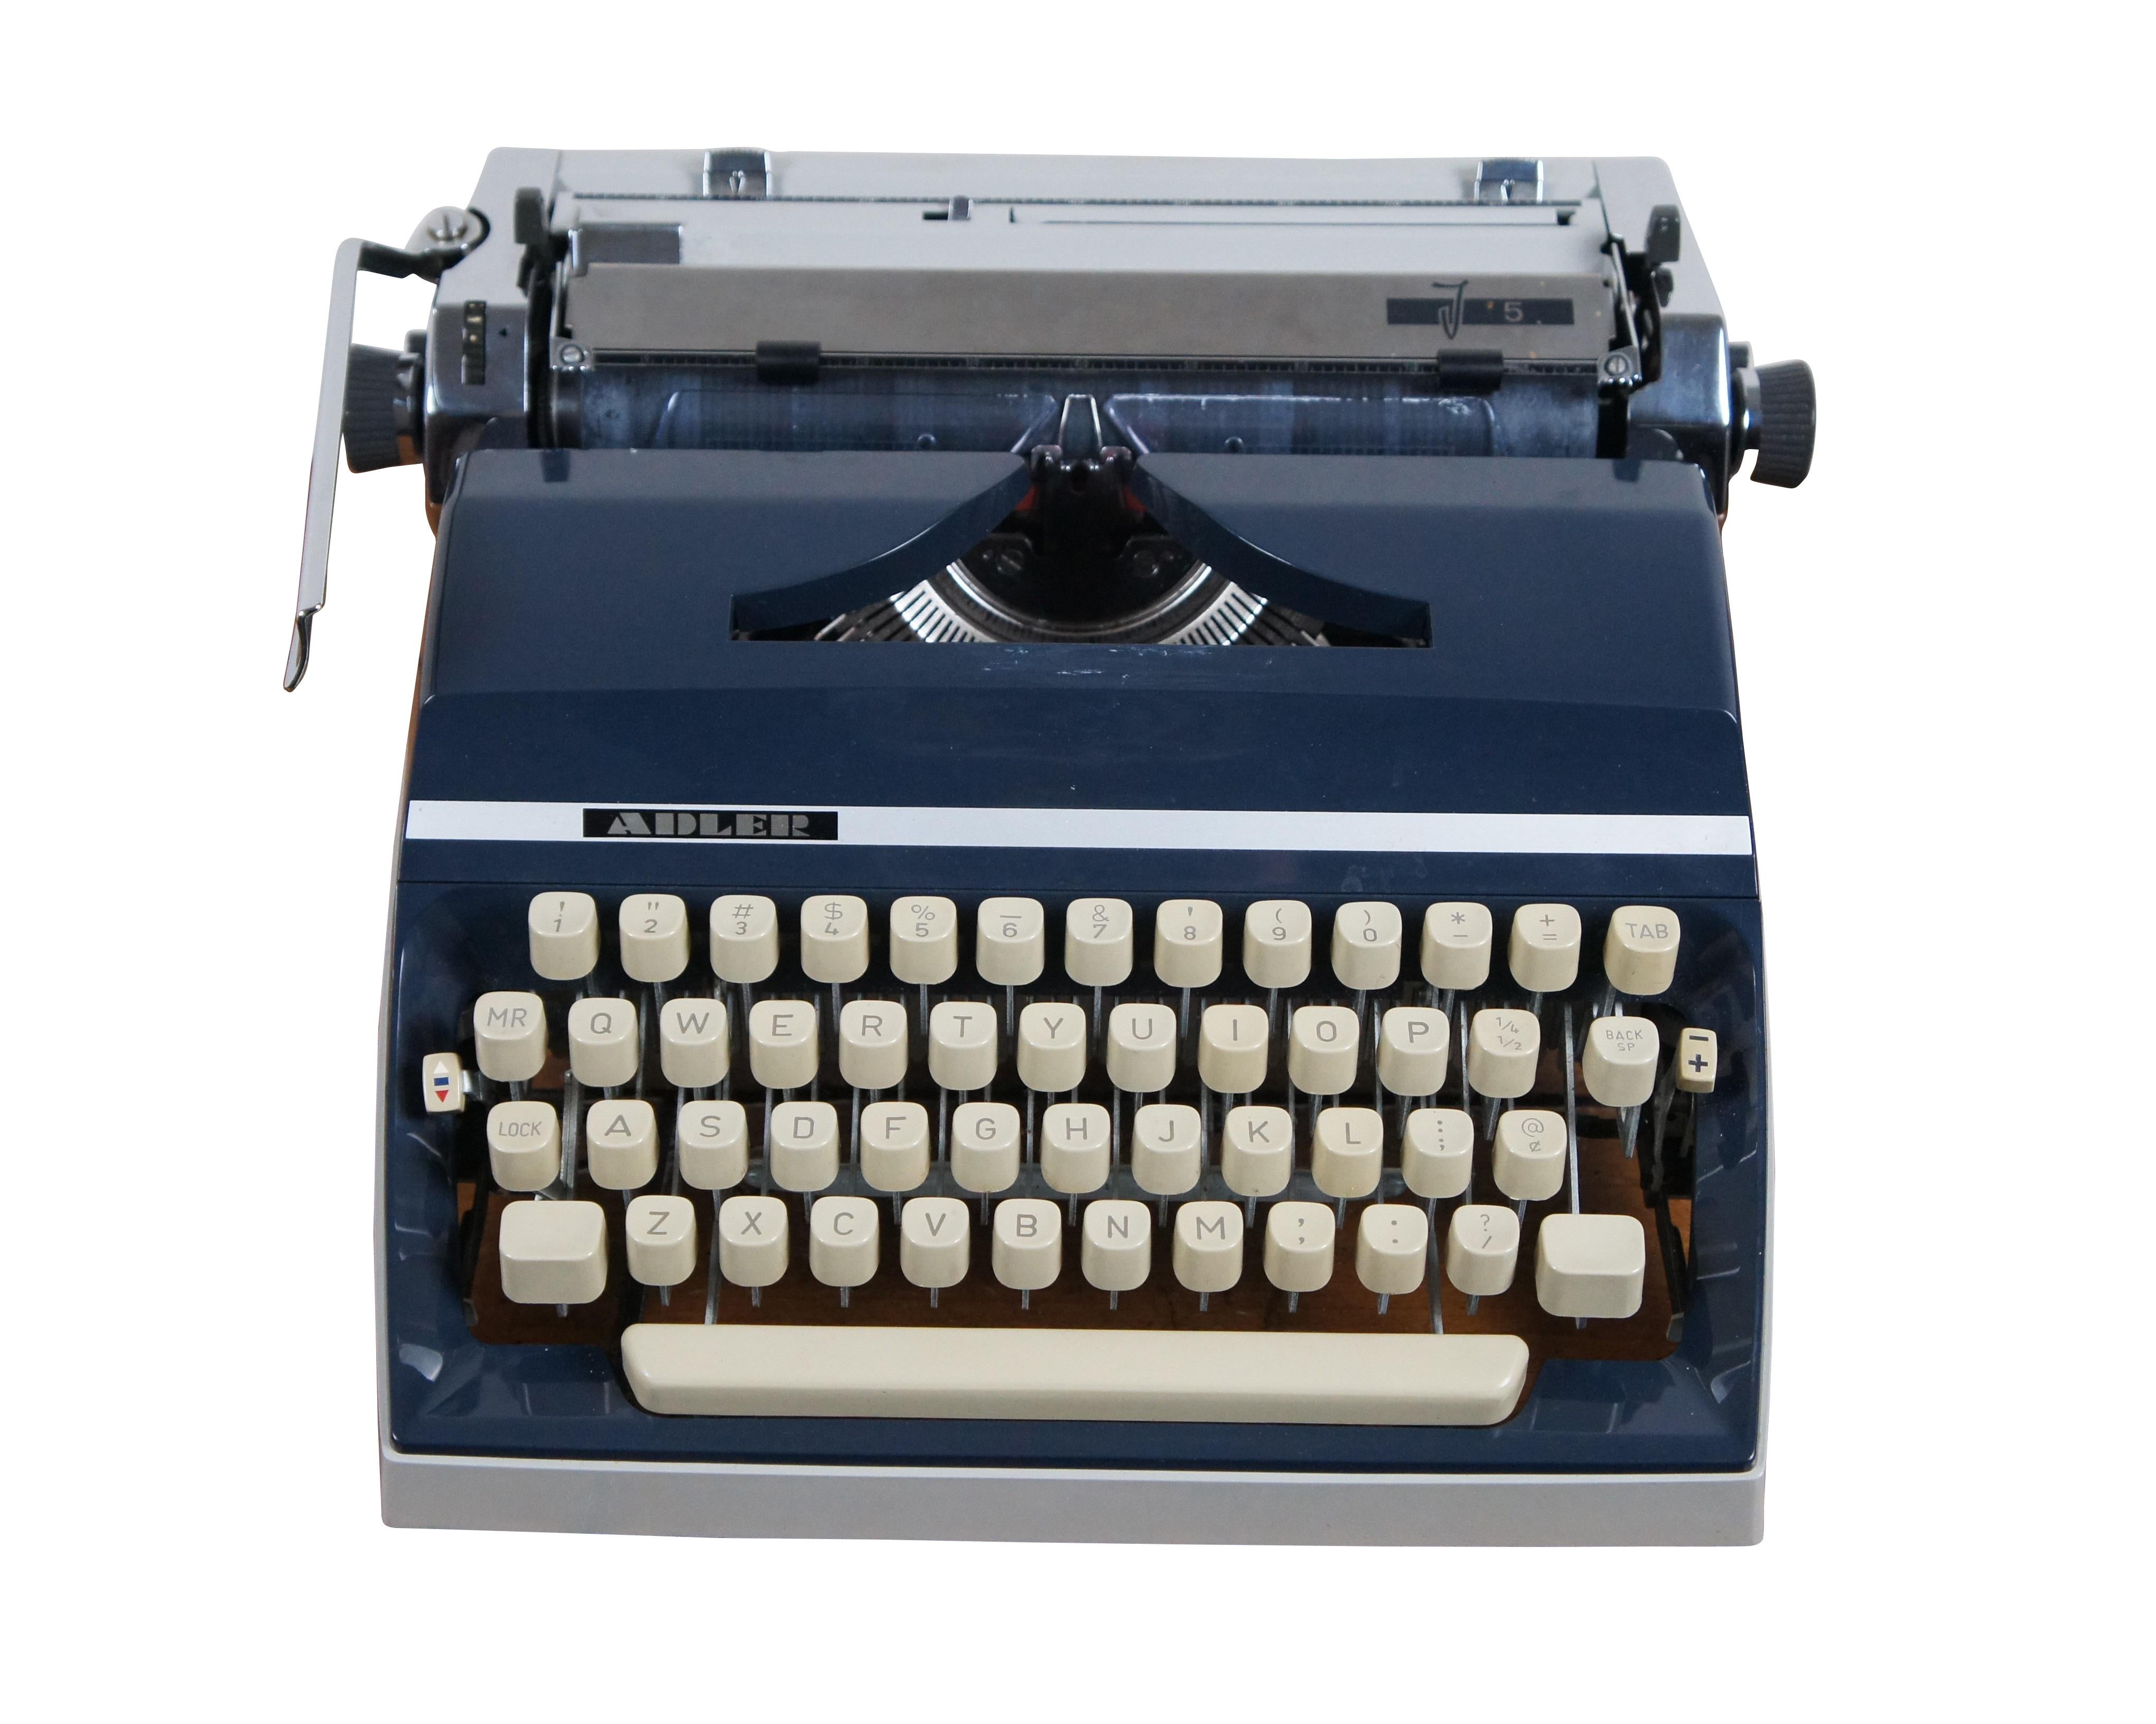 Vintage 1970 Adler J5 mechanische, tragbare Schreibmaschine in grau und marineblau. Seriennummer 4476775. T-A Organisation. Hergestellt in Westdeutschland. Sockel markiert A 301.03005 Form 2. Getestet und scheint in voll funktionsfähigem Zustand zu